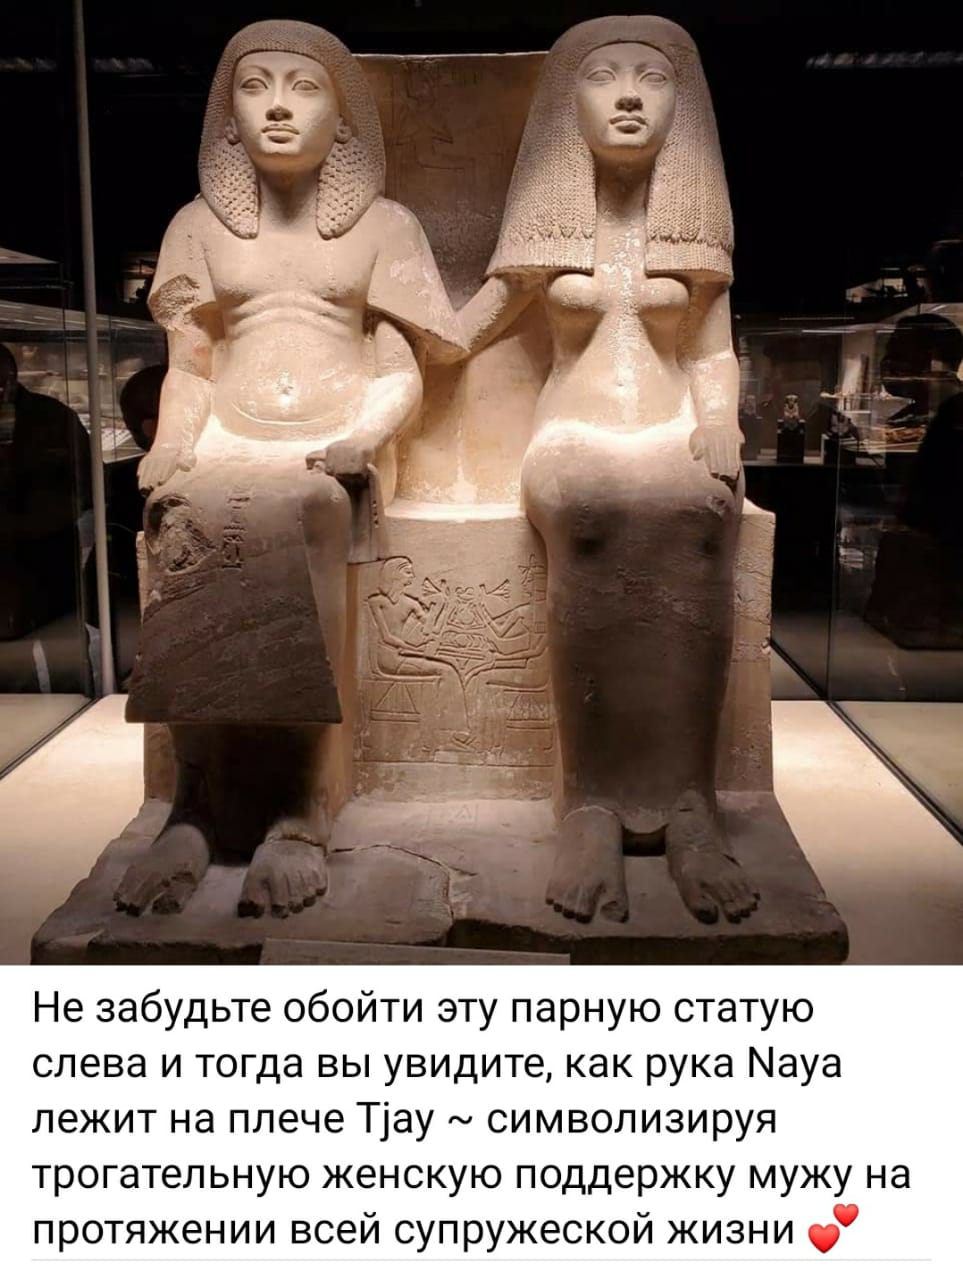 قطع أثرية بمتحف شرم الشيخ